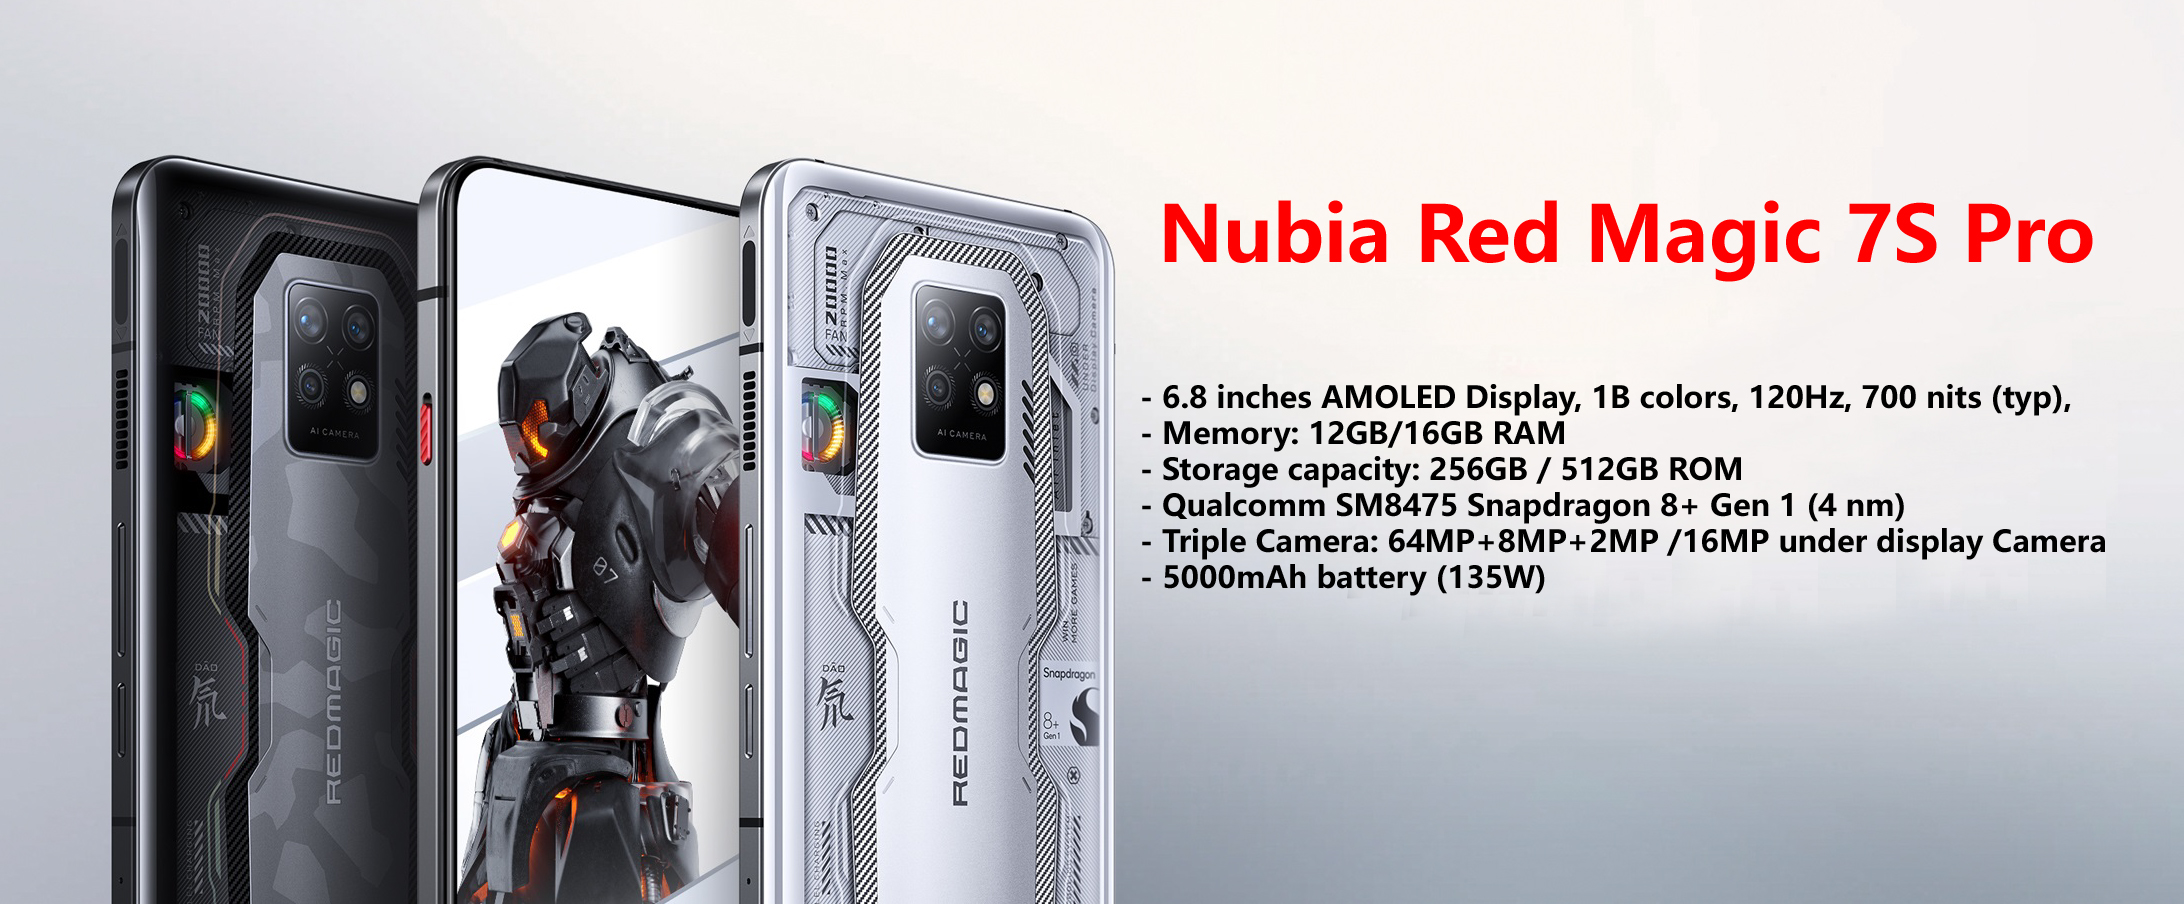 Nubia Red Magic 7S Pro